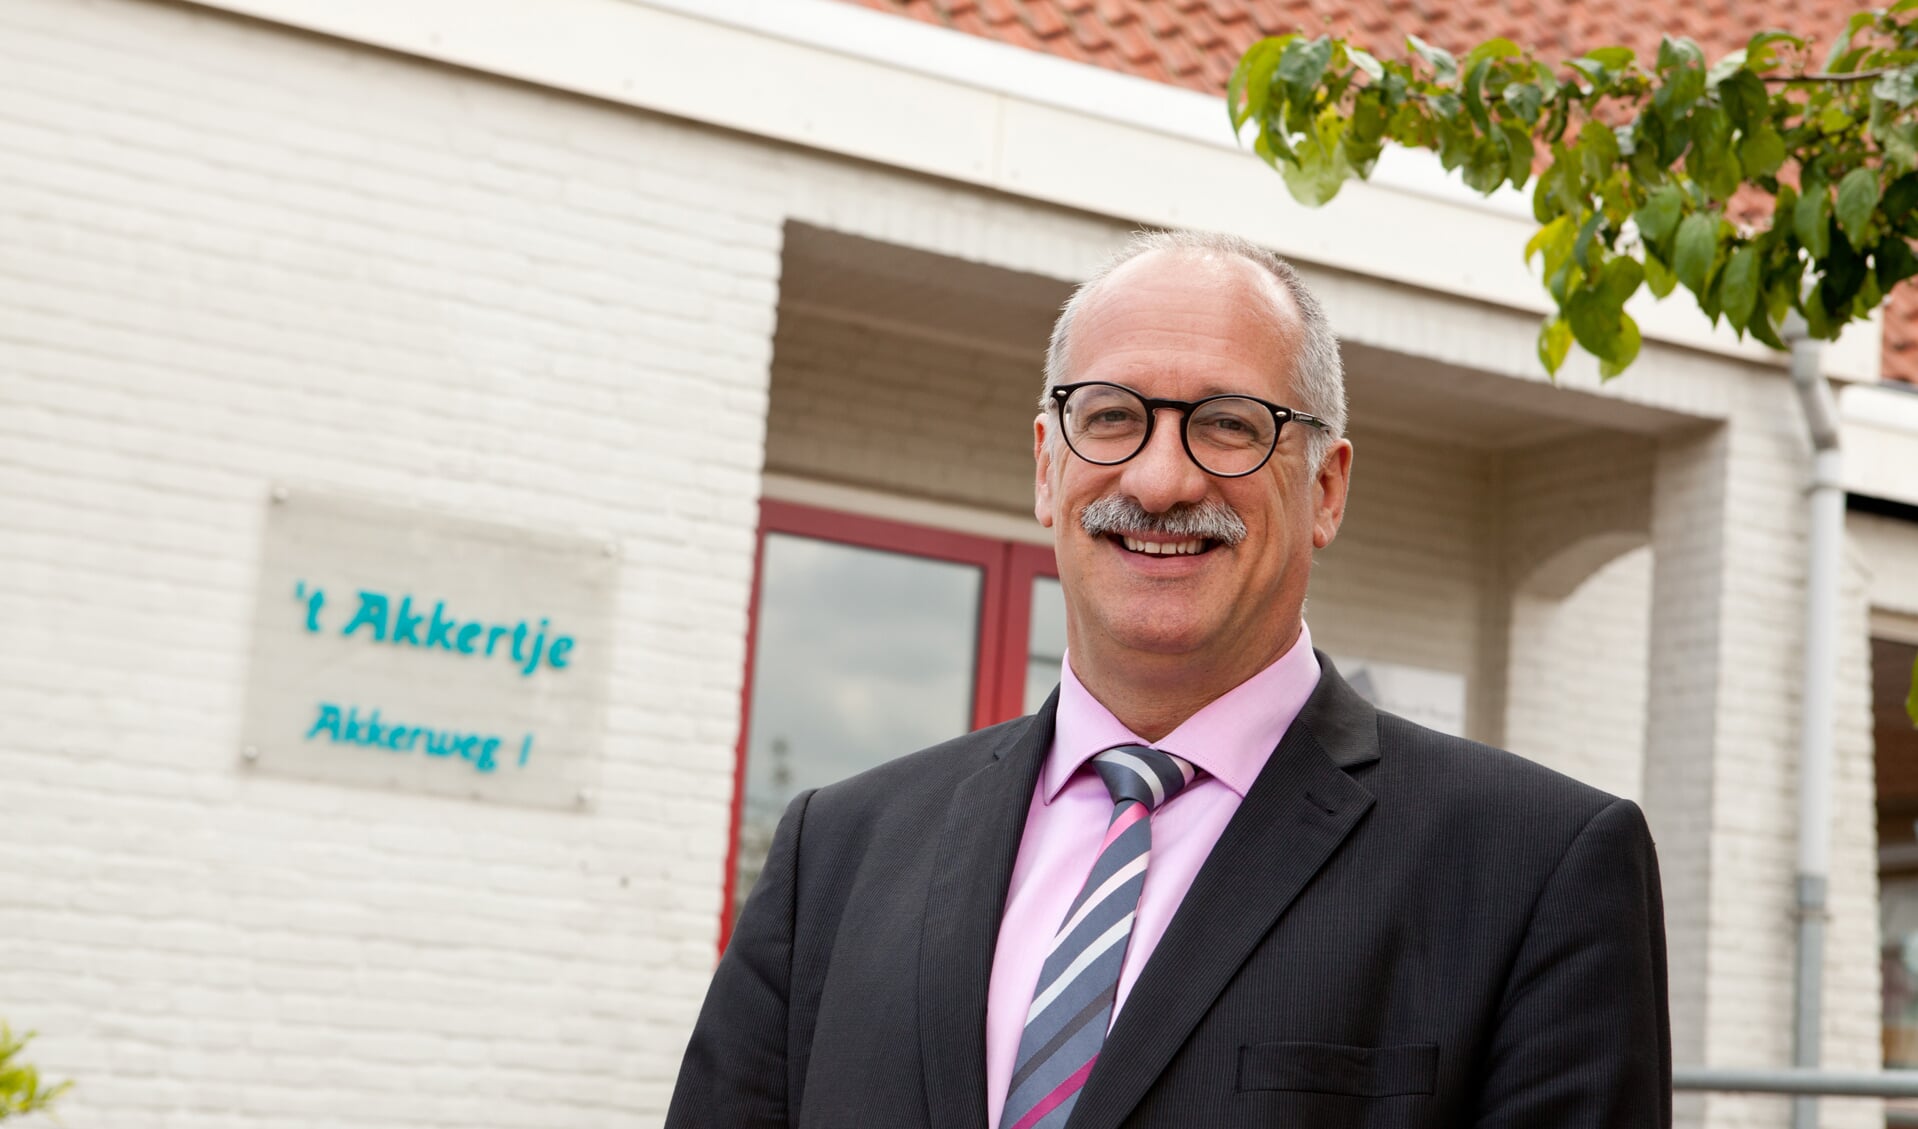 De Cuijkse onderwijswethouder Maarten Jilisen (VVD) kreeg kritiek maar kan verder met nieuwbouw van IKC Padbroek. (archieffoto: Diana Derks)